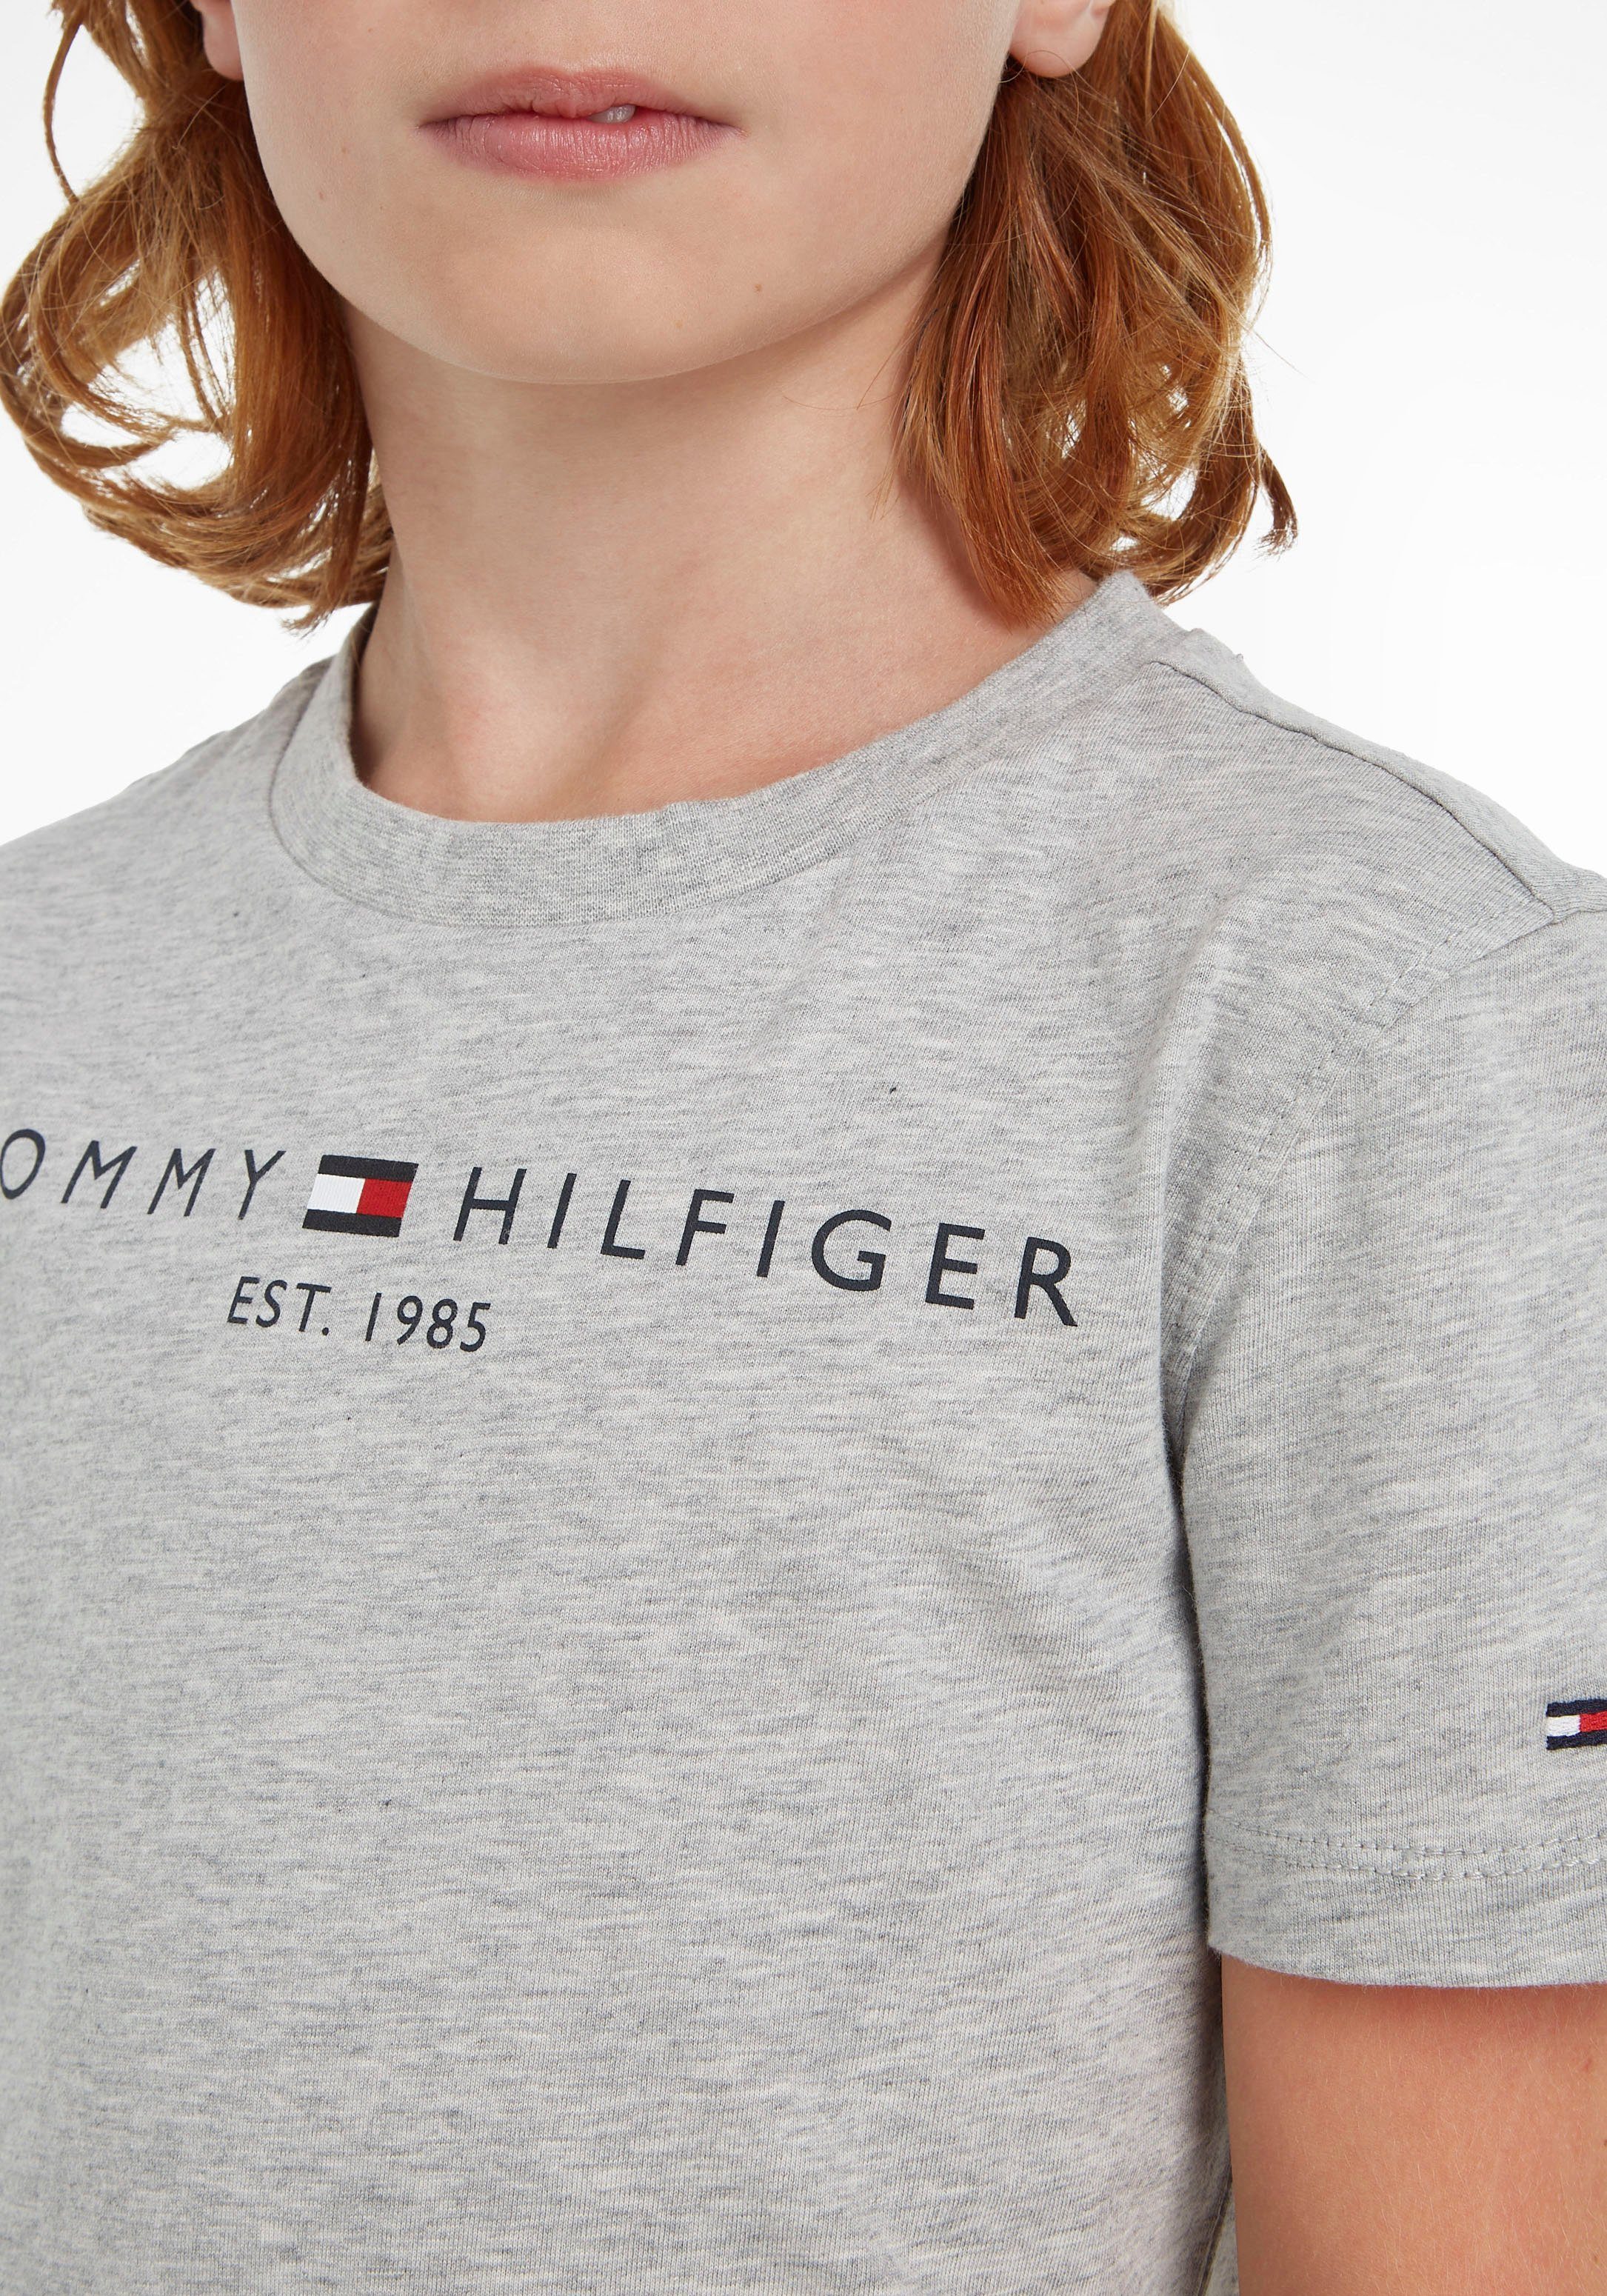 Tommy Hilfiger Jungen MiniMe,für Kinder Kids T-Shirt TEE ESSENTIAL Mädchen Junior und